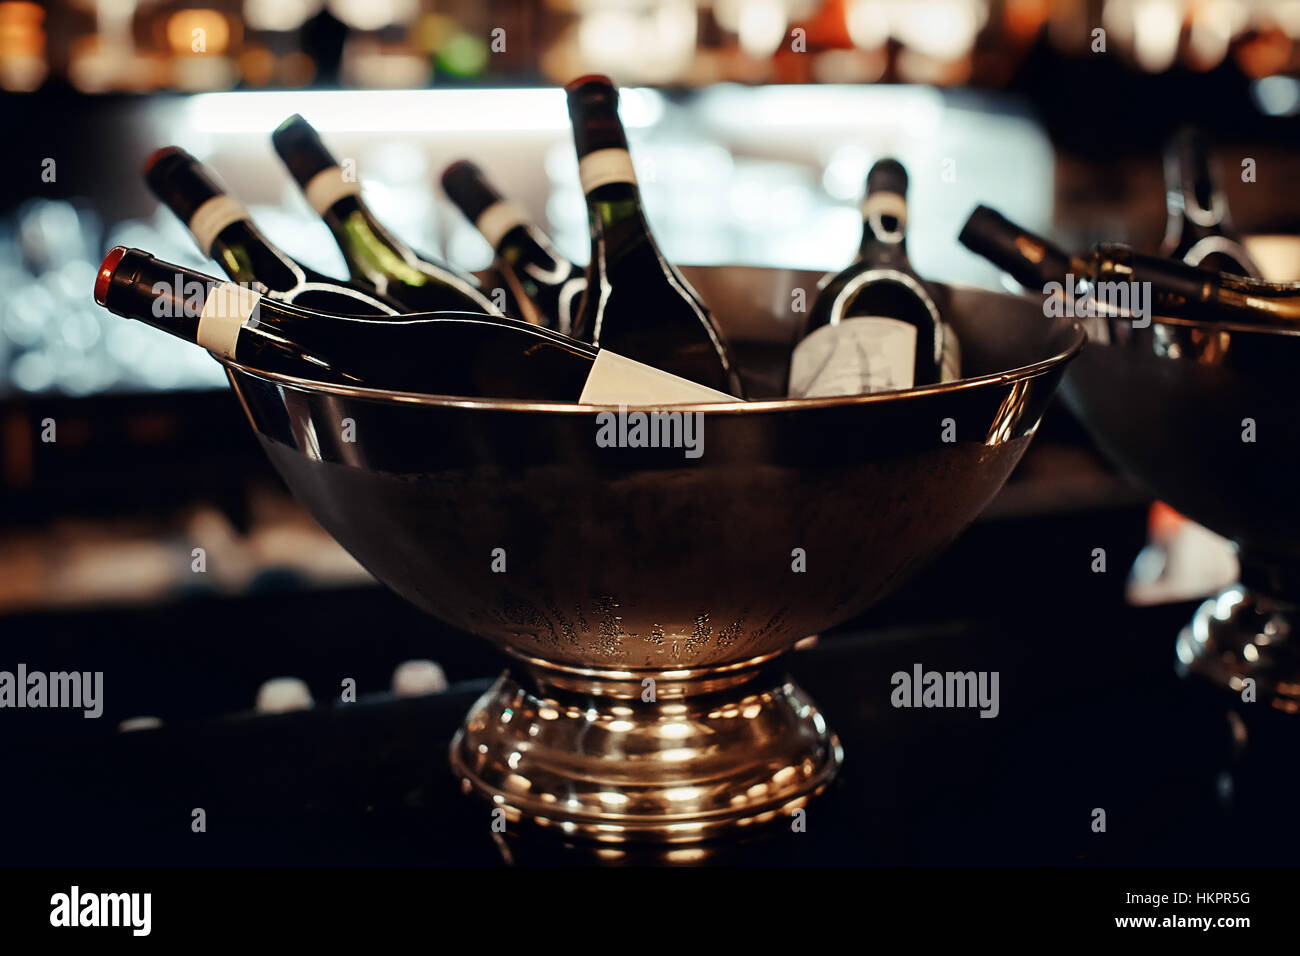 De nombreuses bouteilles de vin dans le bol en métal close-up Banque D'Images